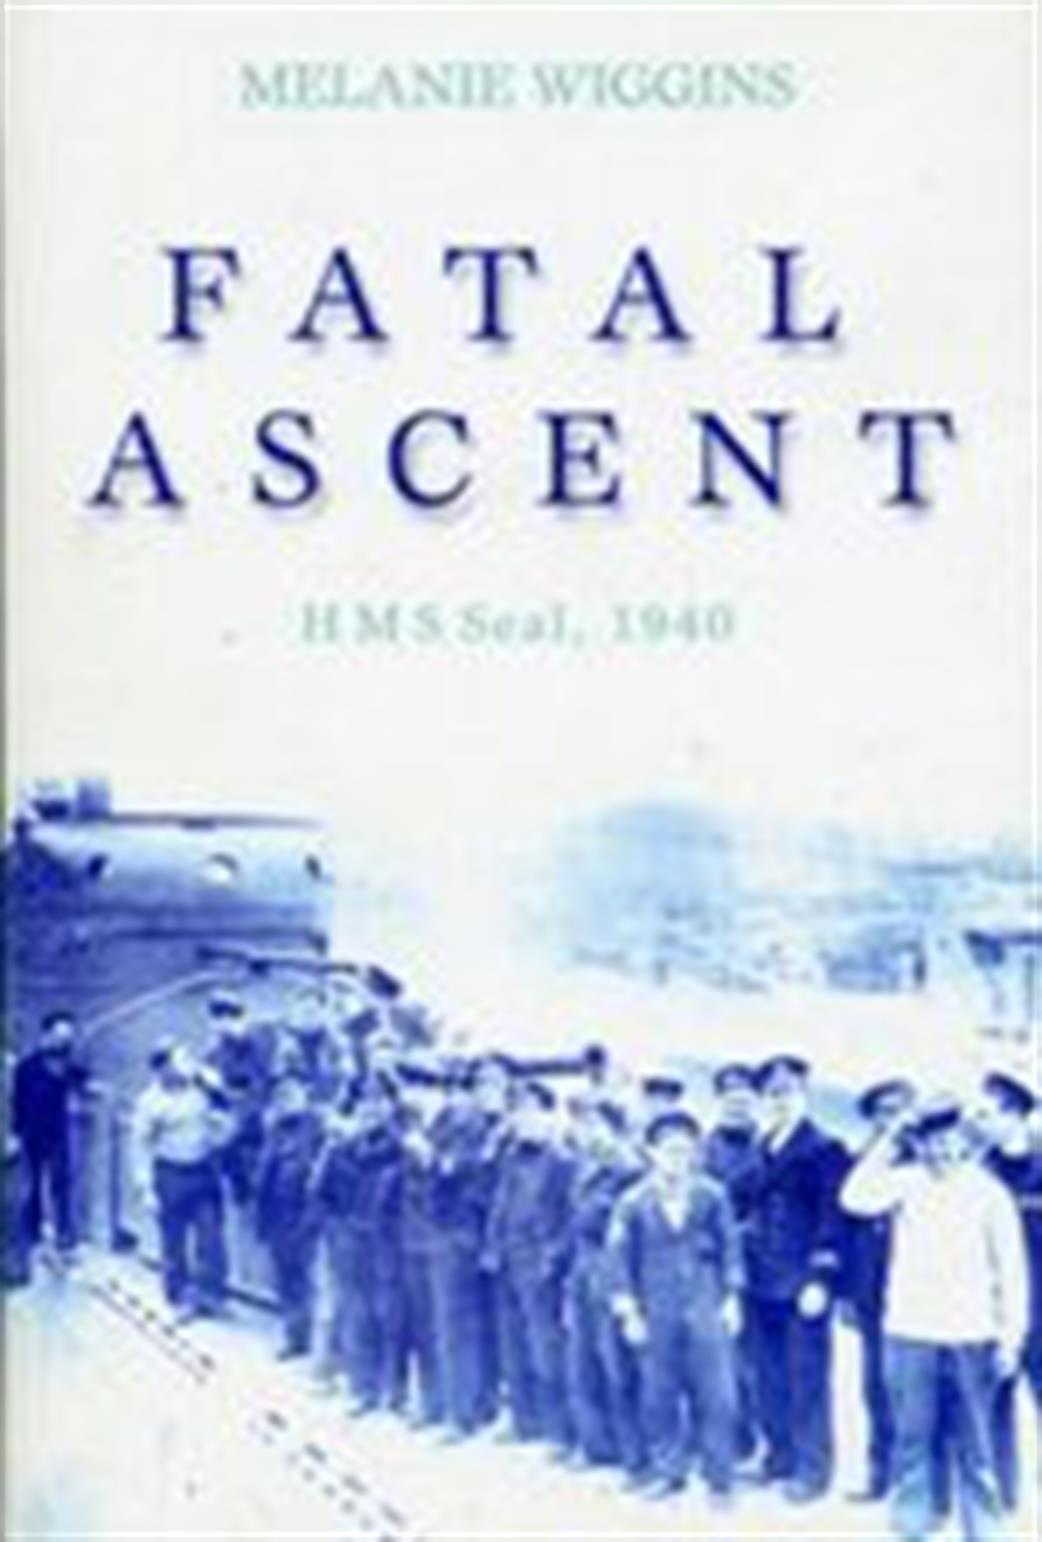 1862273189 Fatal Ascent HMS Seal 1940